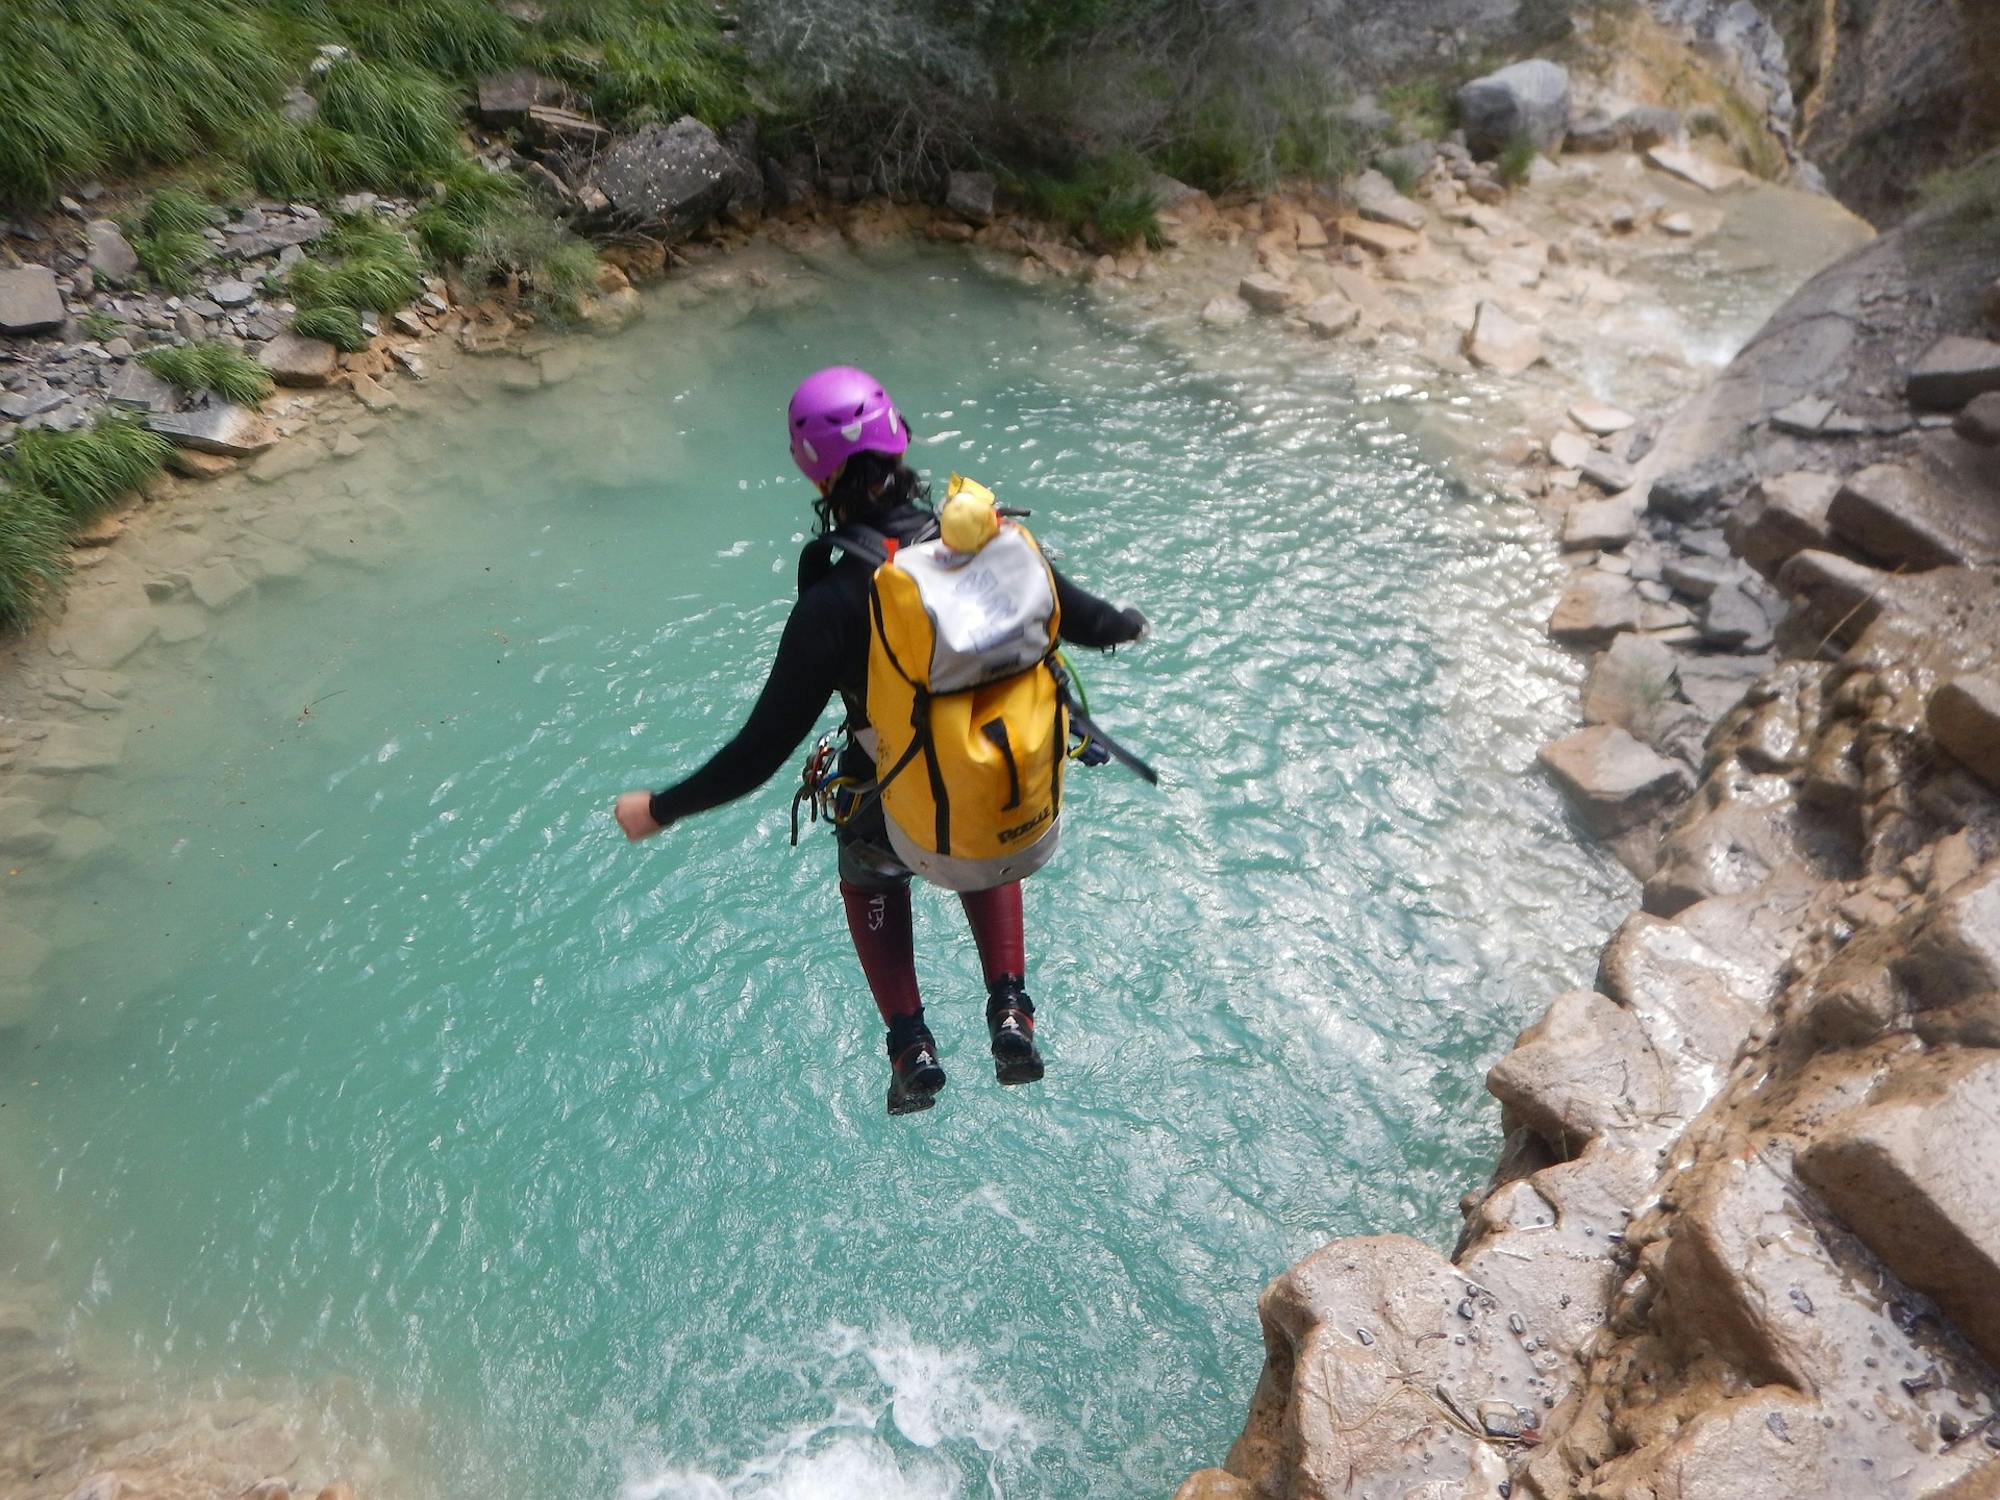 Kobieta w pełnym stroju (plecak, kask, spodnie, kurtka) skacze do błękitnych wód wąwozu. Jest na wycieczce canyoningowej.